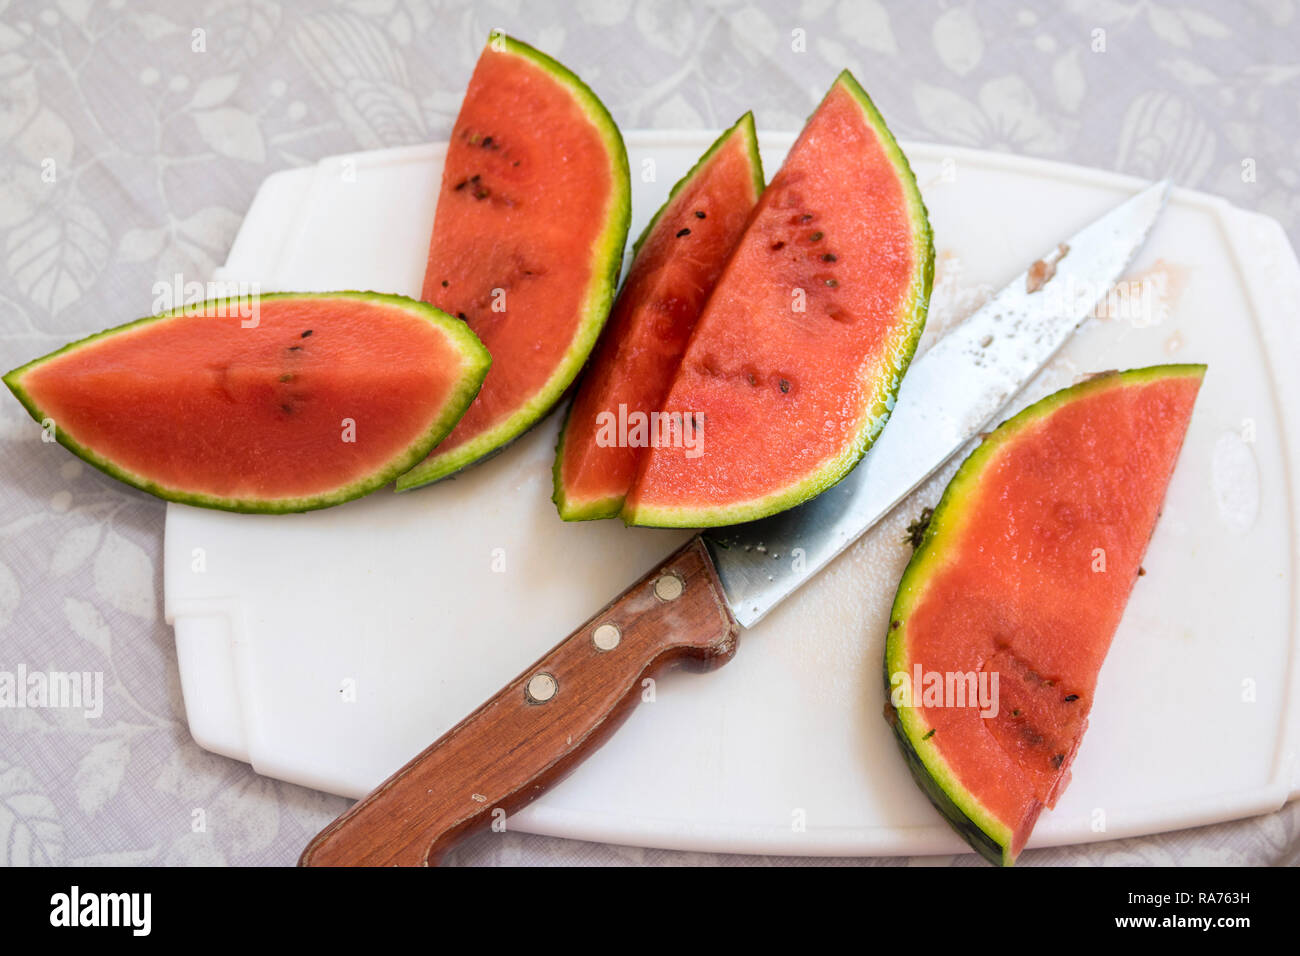 Scheiben rote reife Wassermelone ein Schneidebrett scharfe Schinkenmesser Griff aus Holz, 5 am Tag, gesundes Wohnen, Lifestyle Konzept frisches Obst frühstück Melone Stockfoto